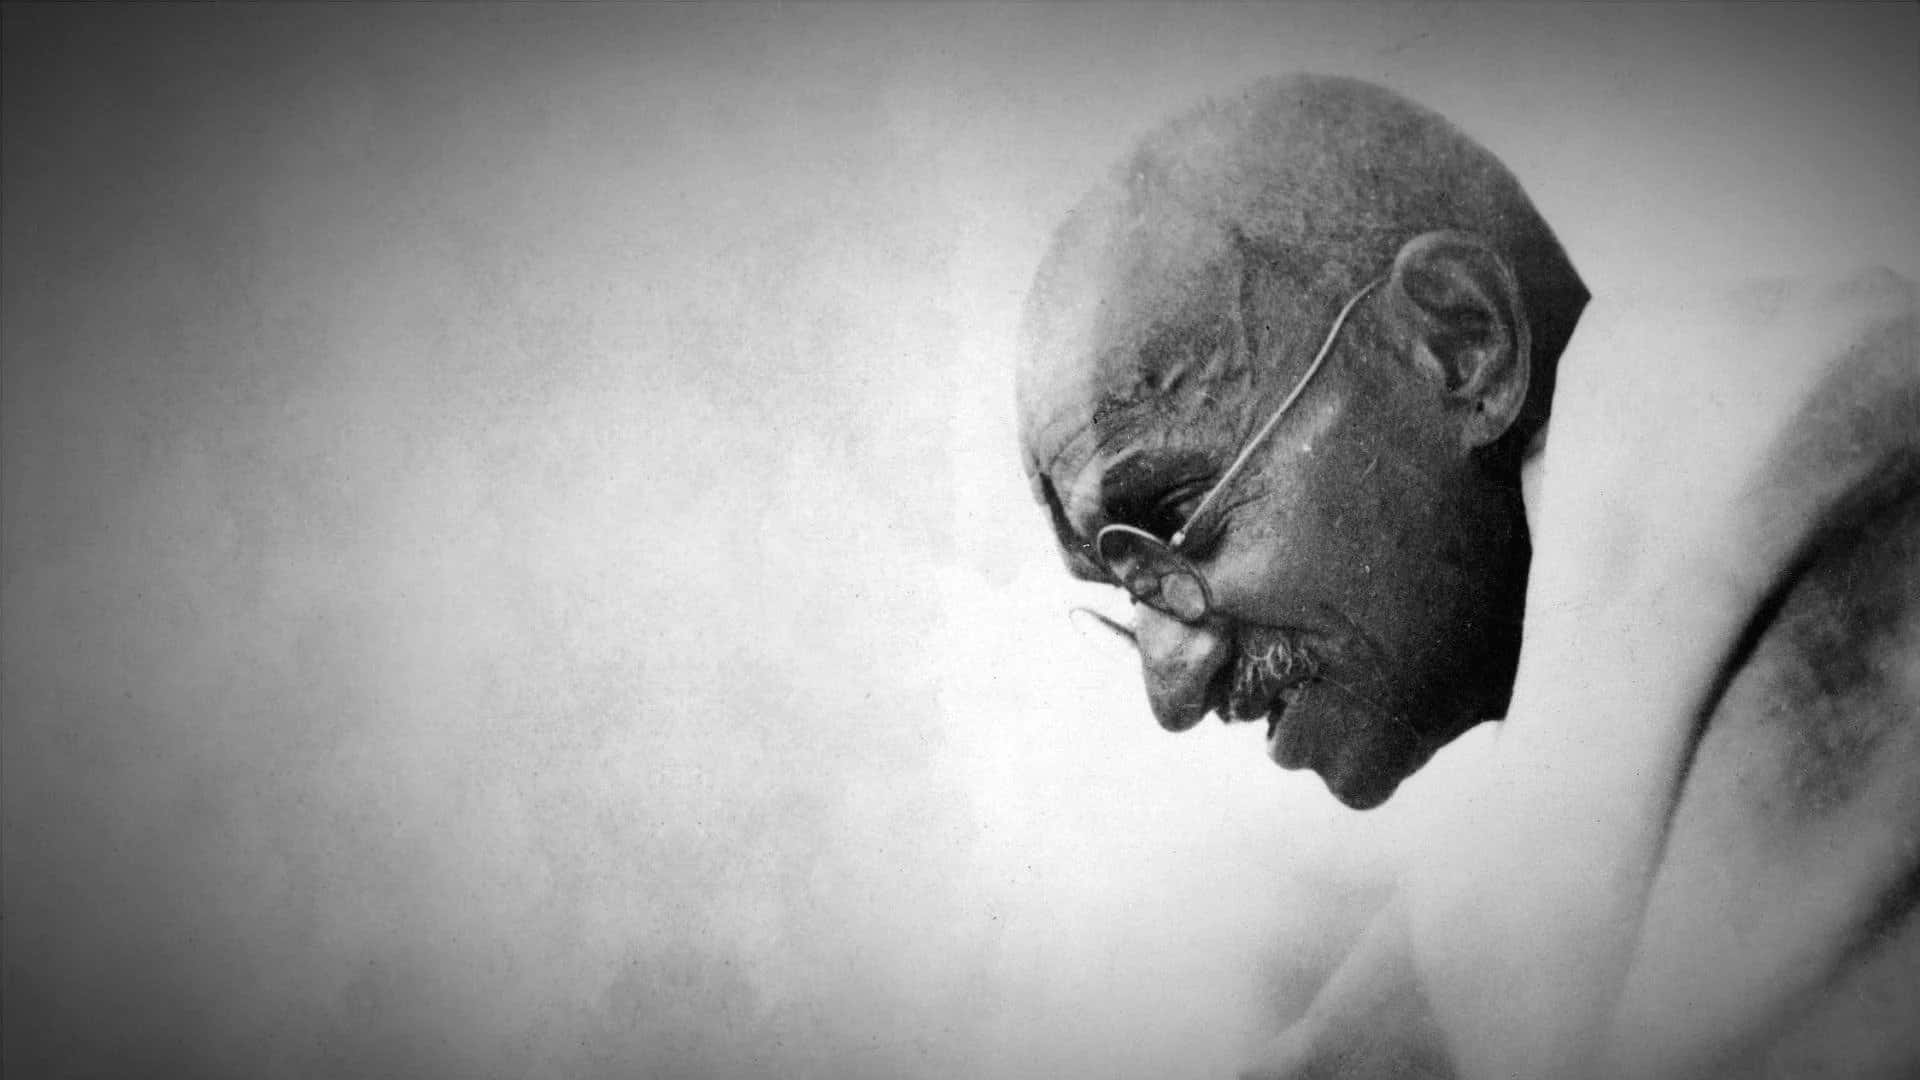 Einporträt Von Mahatma Gandhi: Gewaltlos, Standhaft Und Mitfühlend.